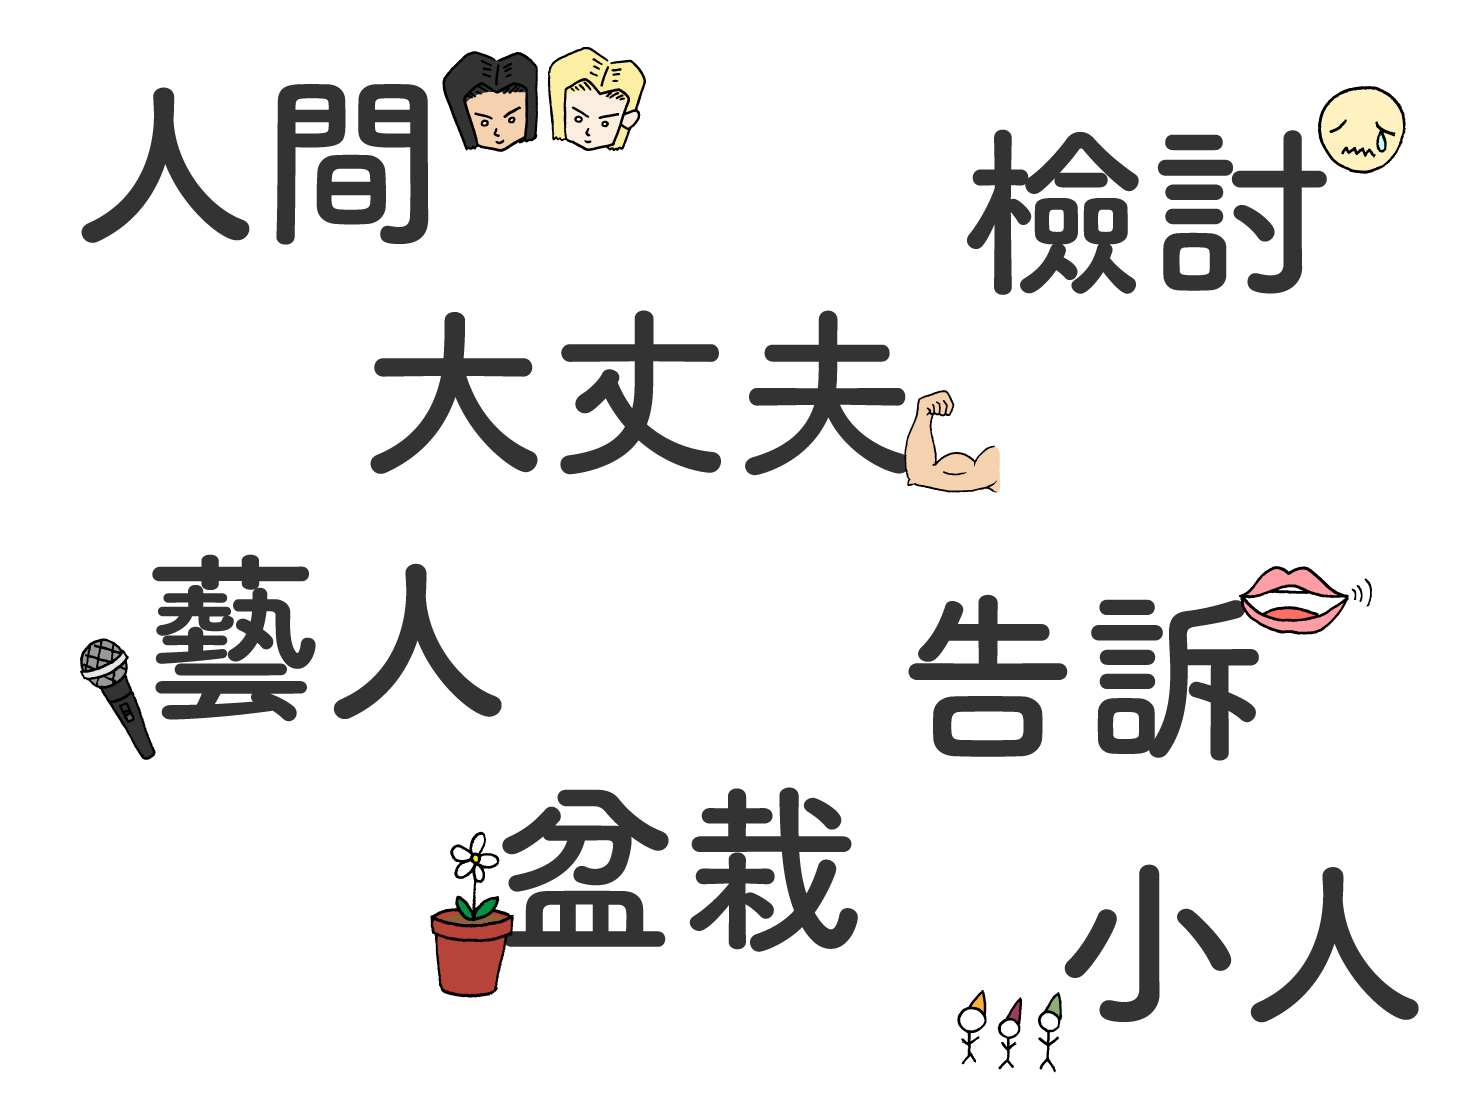 日本語と同じ漢字でも、意味が異なる中国語単語